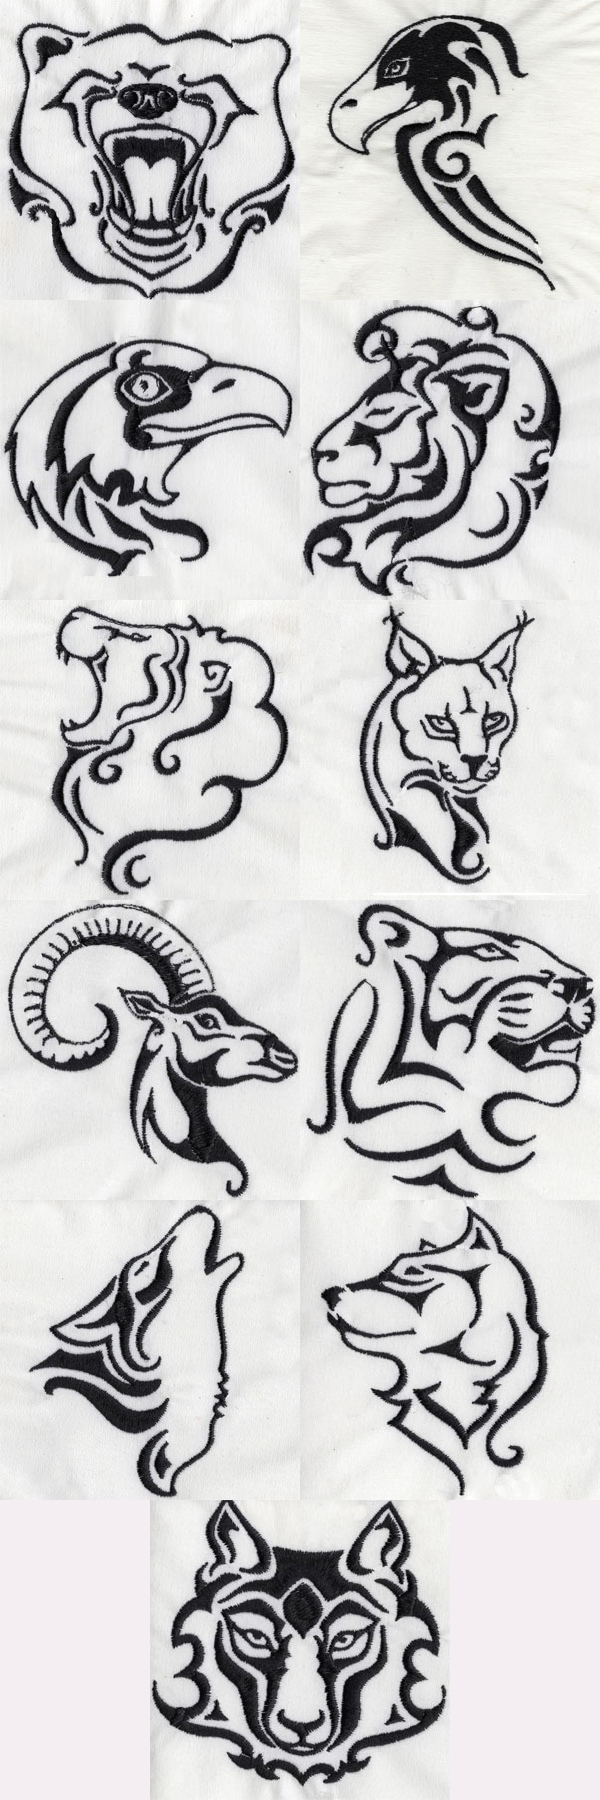 Wild Animal Heads Embroidery Machine Design Details